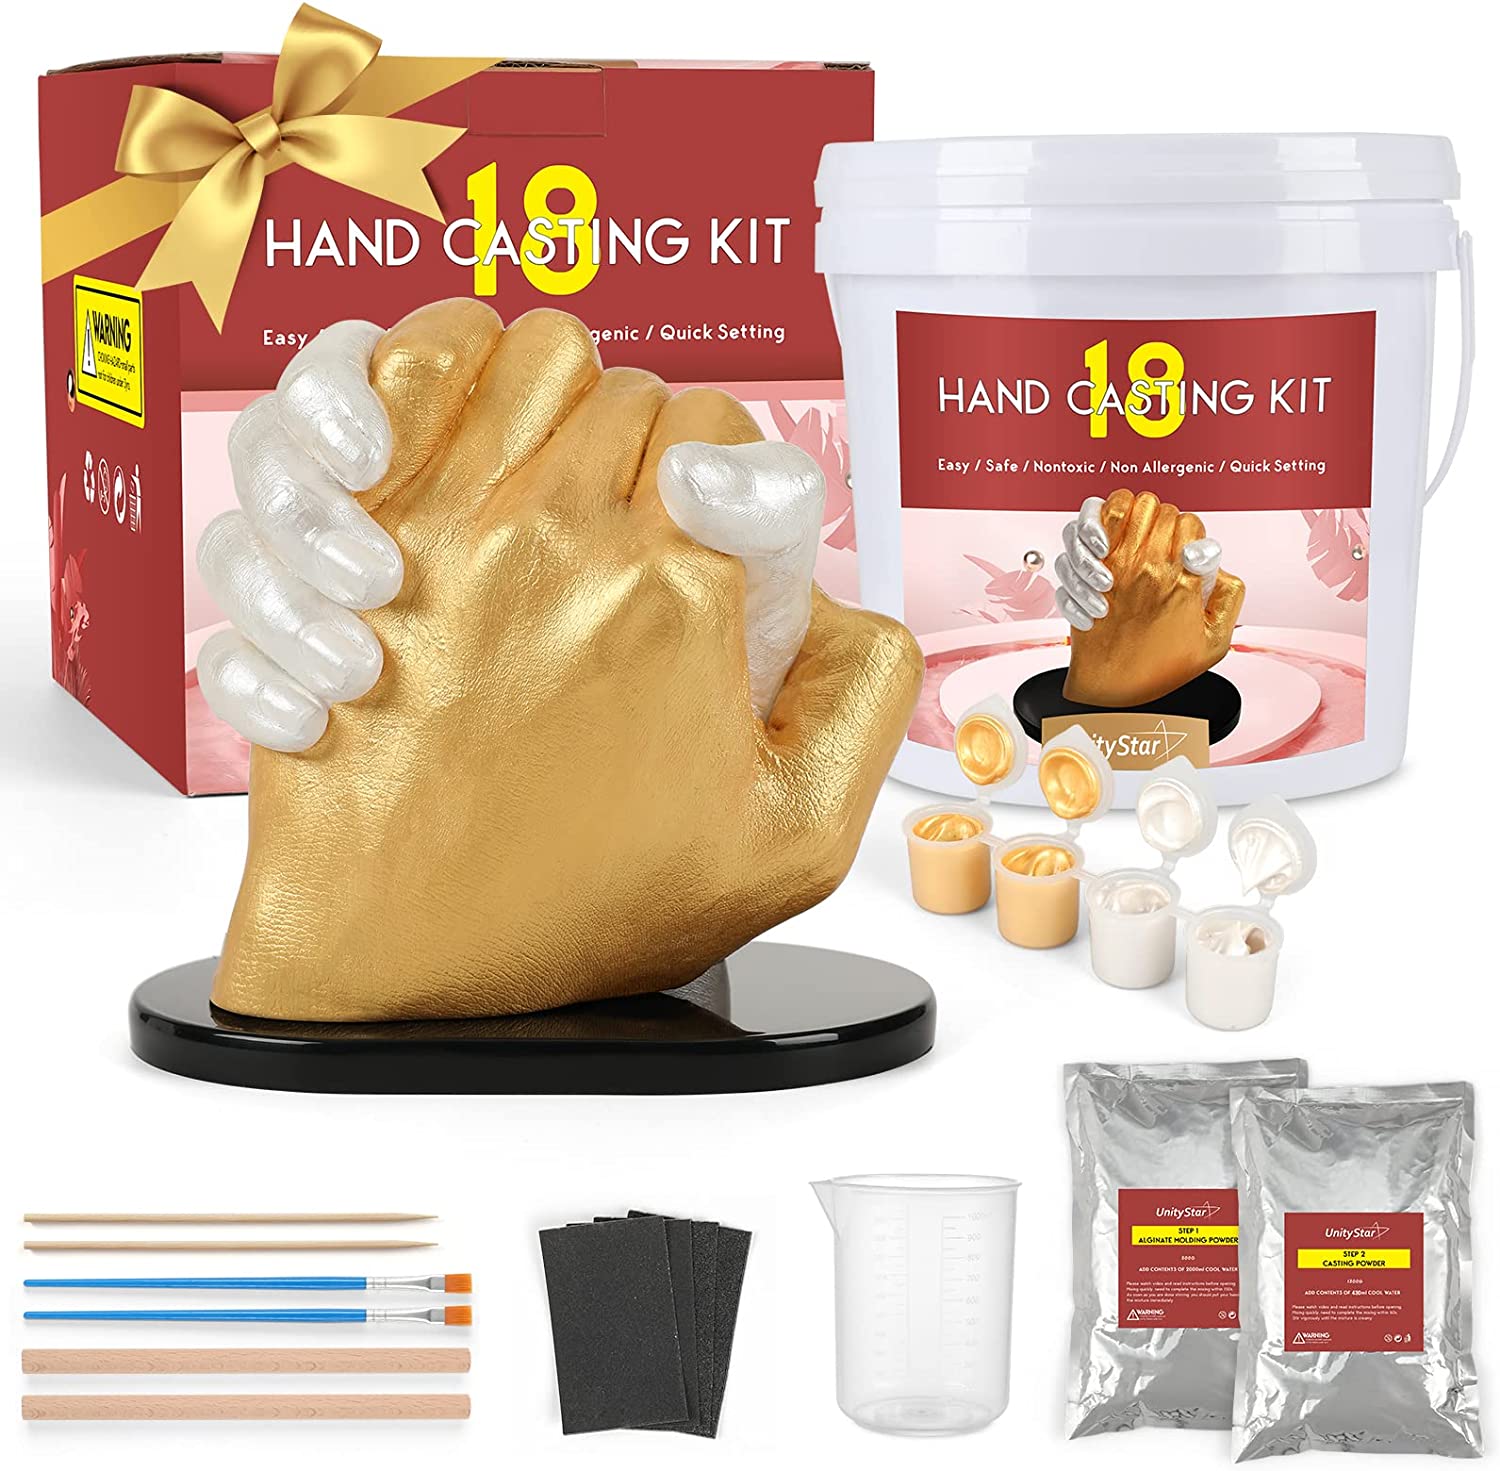 Hand Casting Kit for Couples, UnityStar Hand Mold Kit for Family